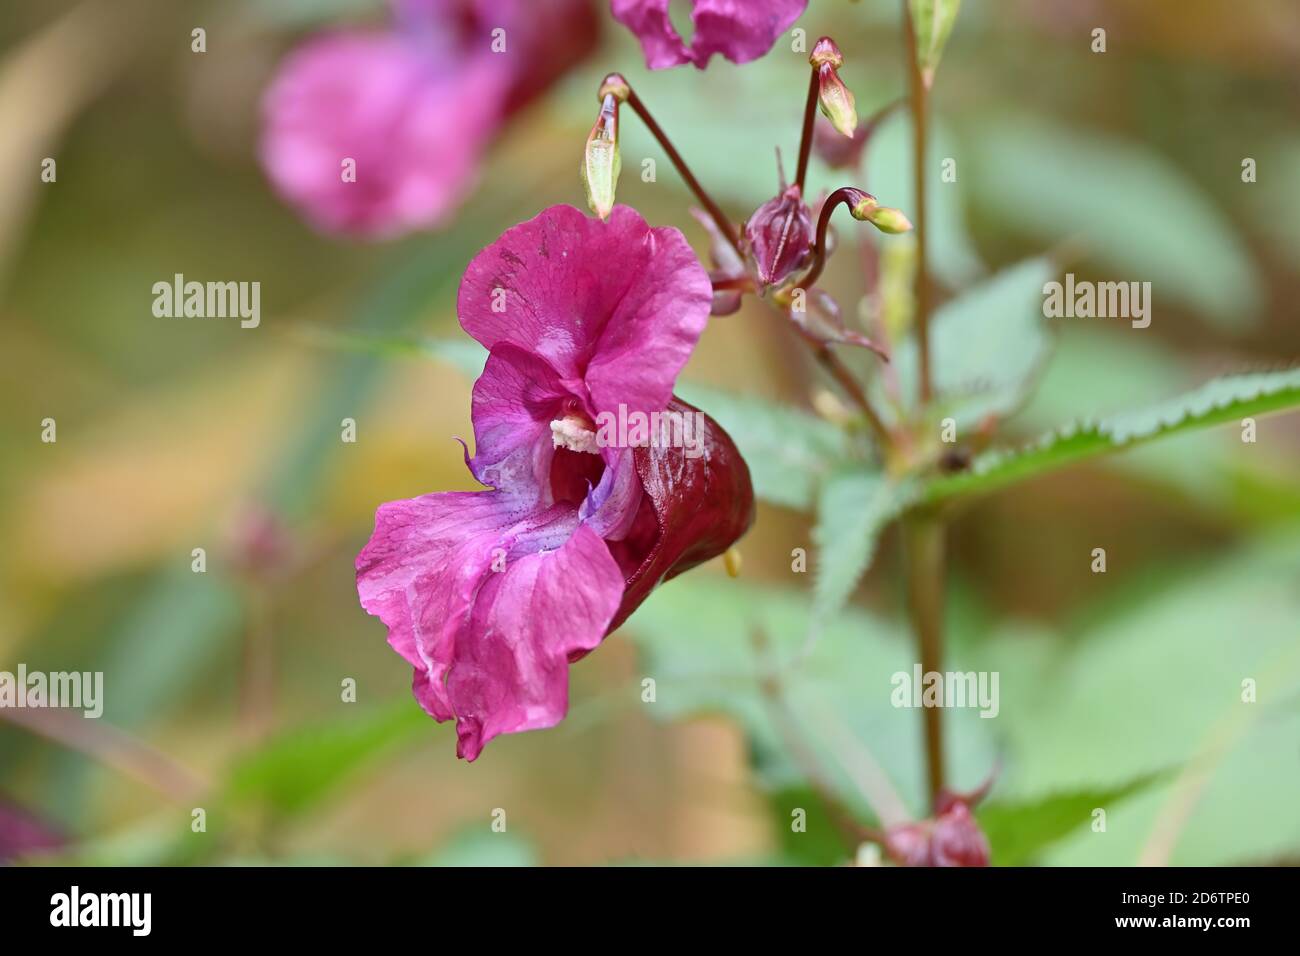 Impatiens glandulifera, balsamo himalayano fiorito rosa. Impianto di caschi da poliziotto, Bobby Tops, in primo piano. Foto Stock